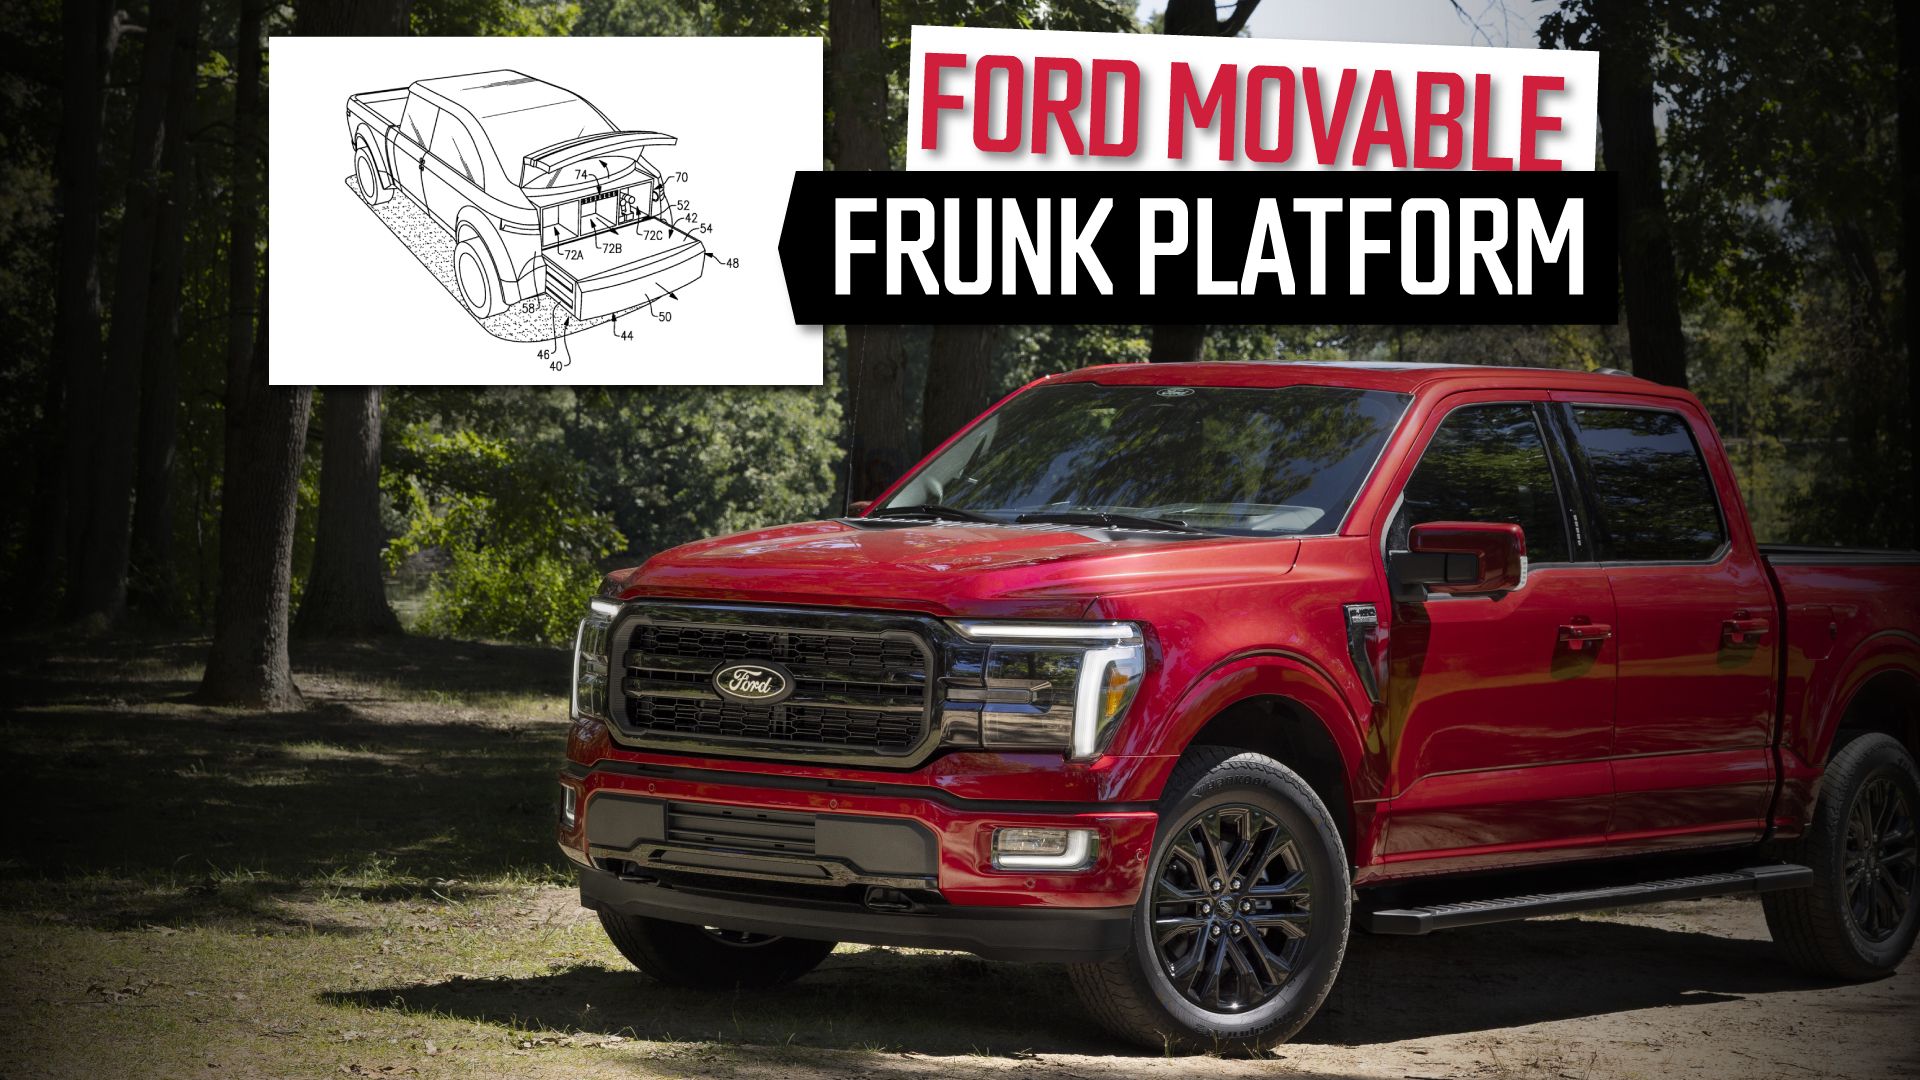 Ford-movable-frunk-platform